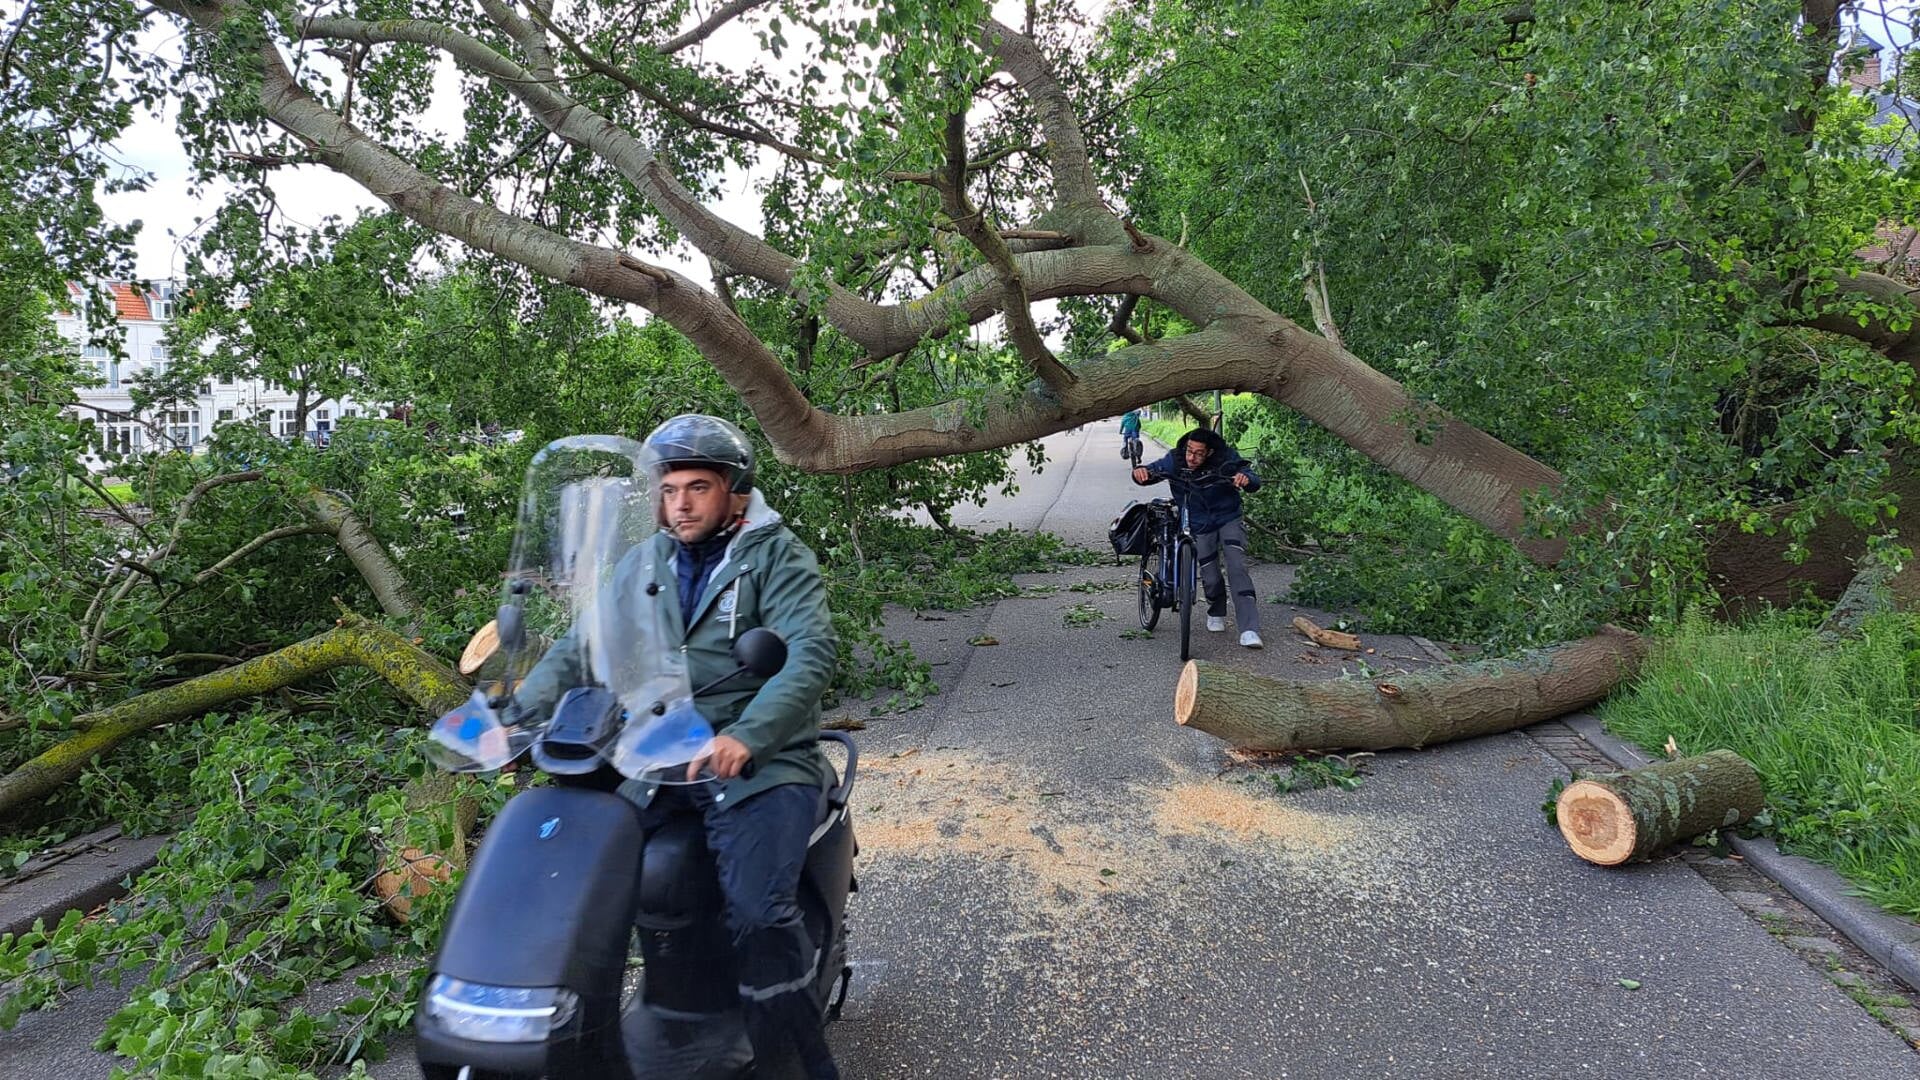 Inventieve weggebruikers proberen met hun fietsen en scooters onder de boom door te manoeuvreren.